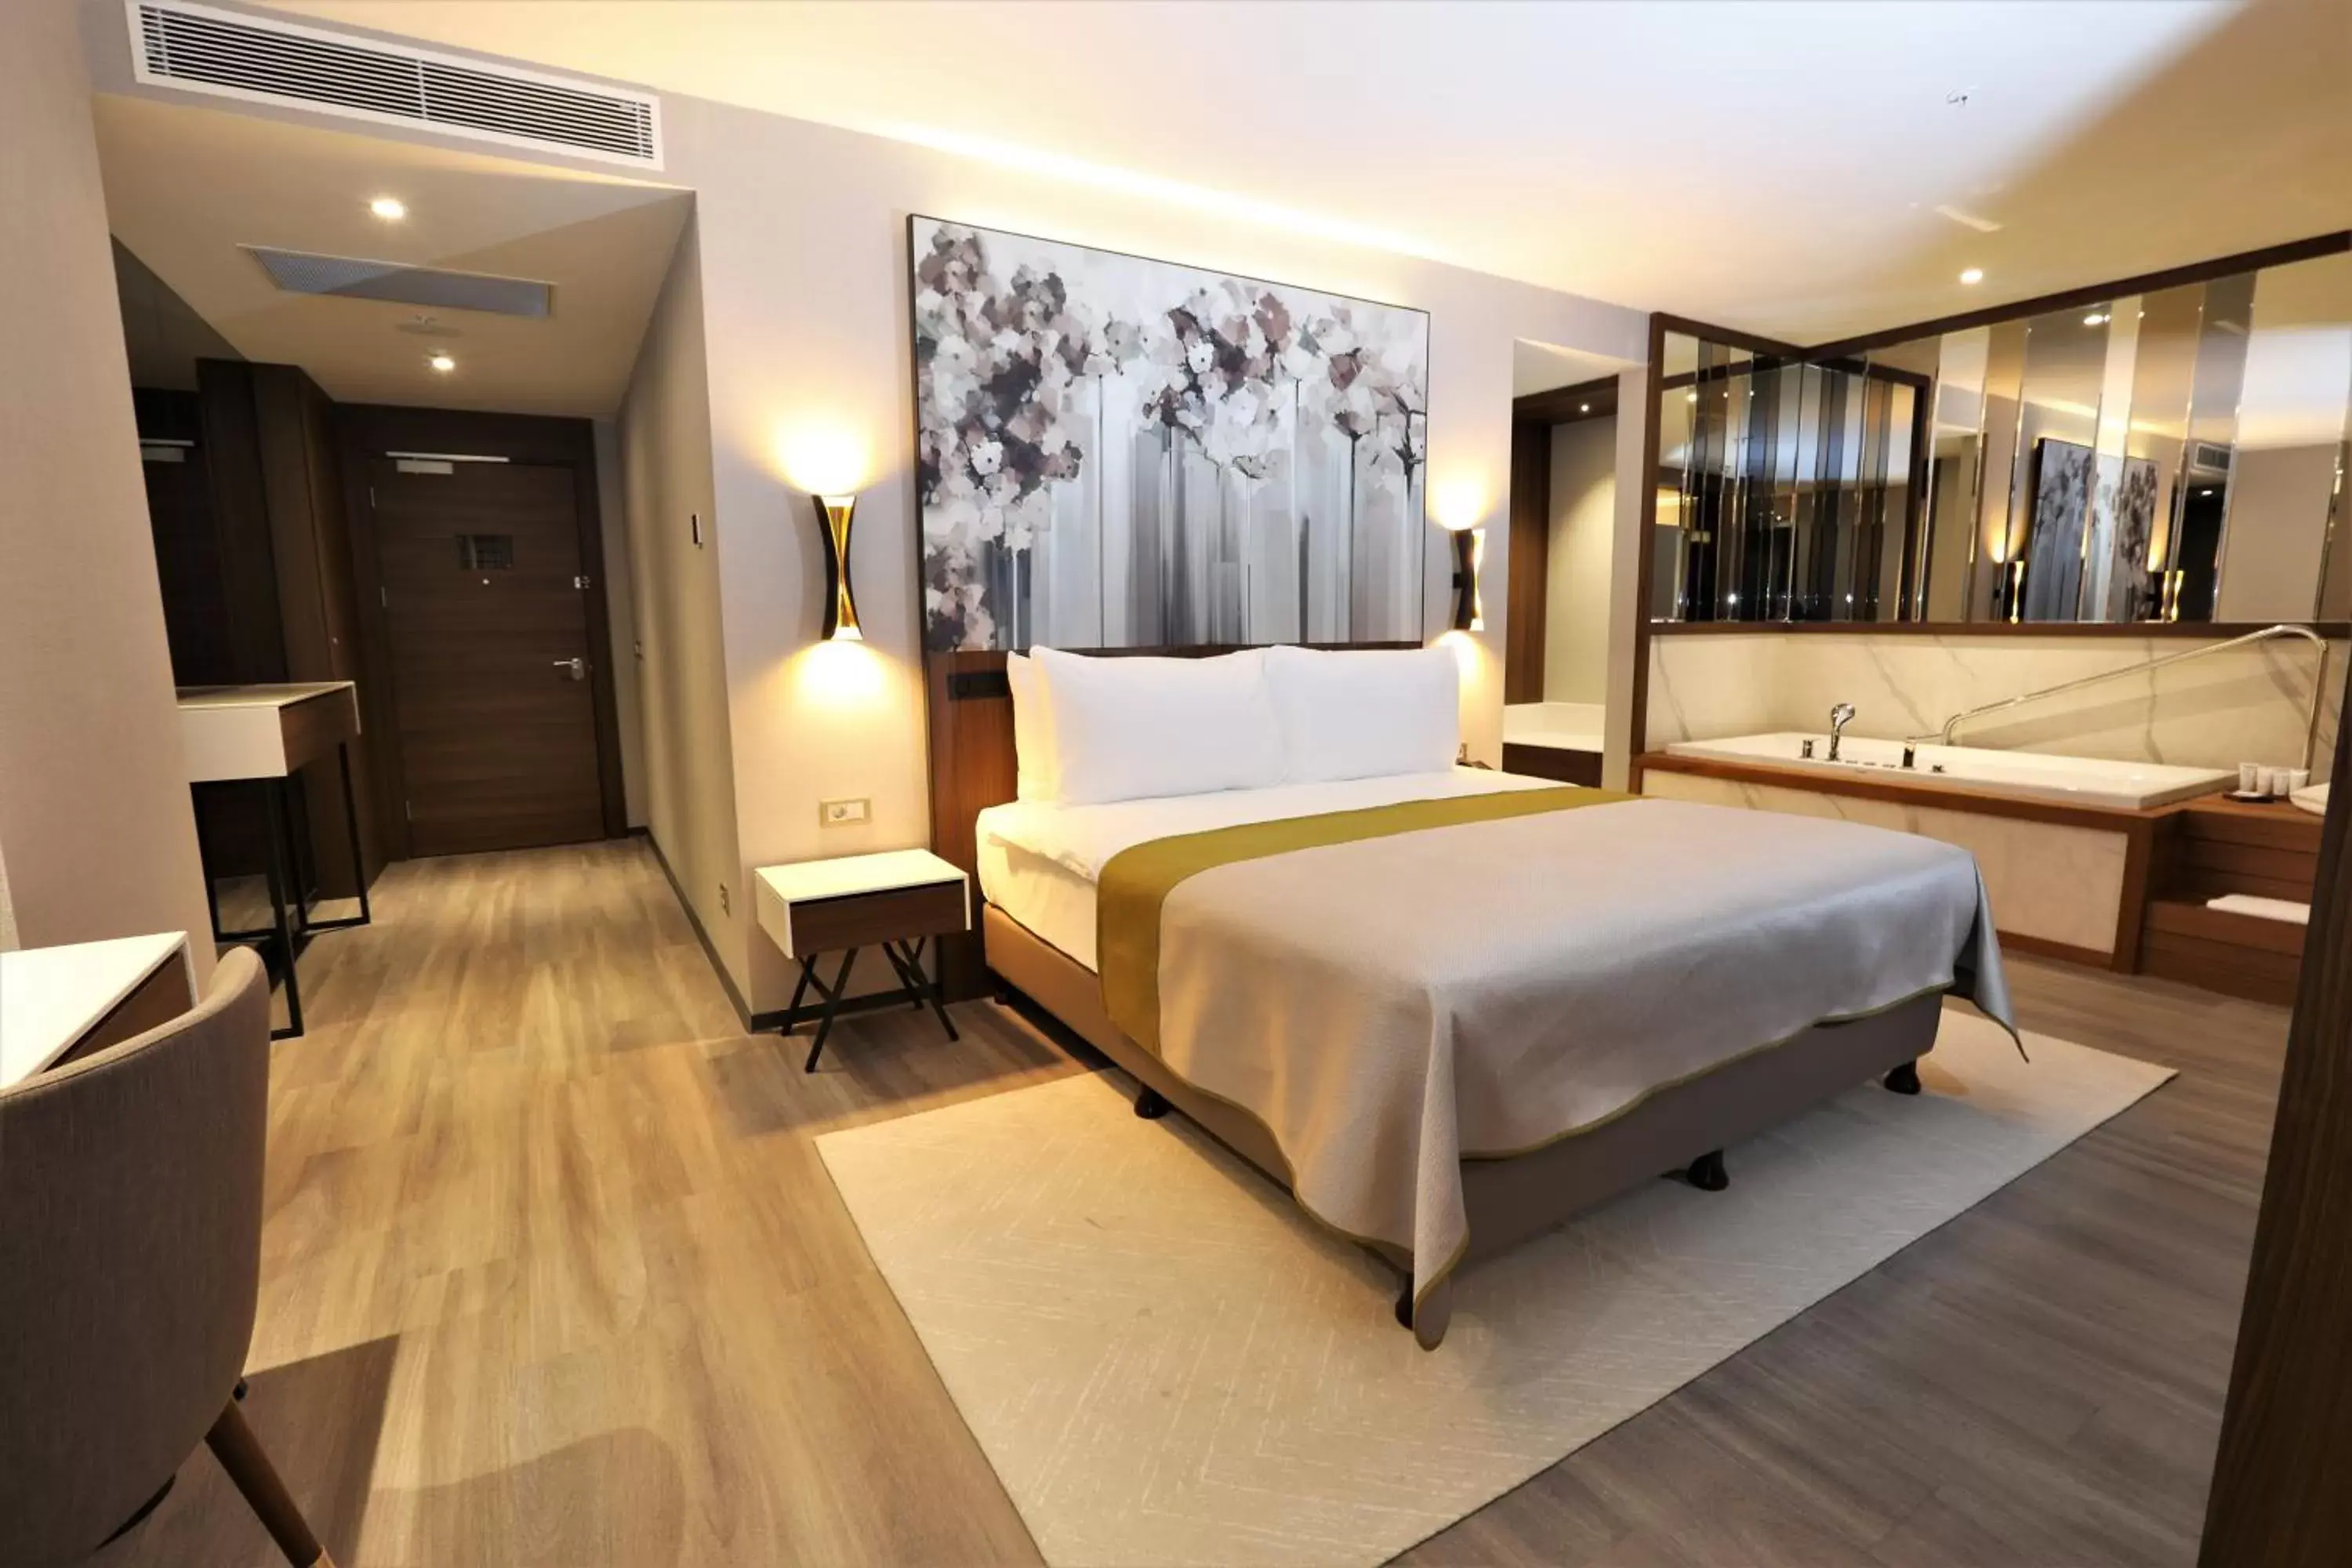 Bedroom in Limak Skopje Luxury Hotel